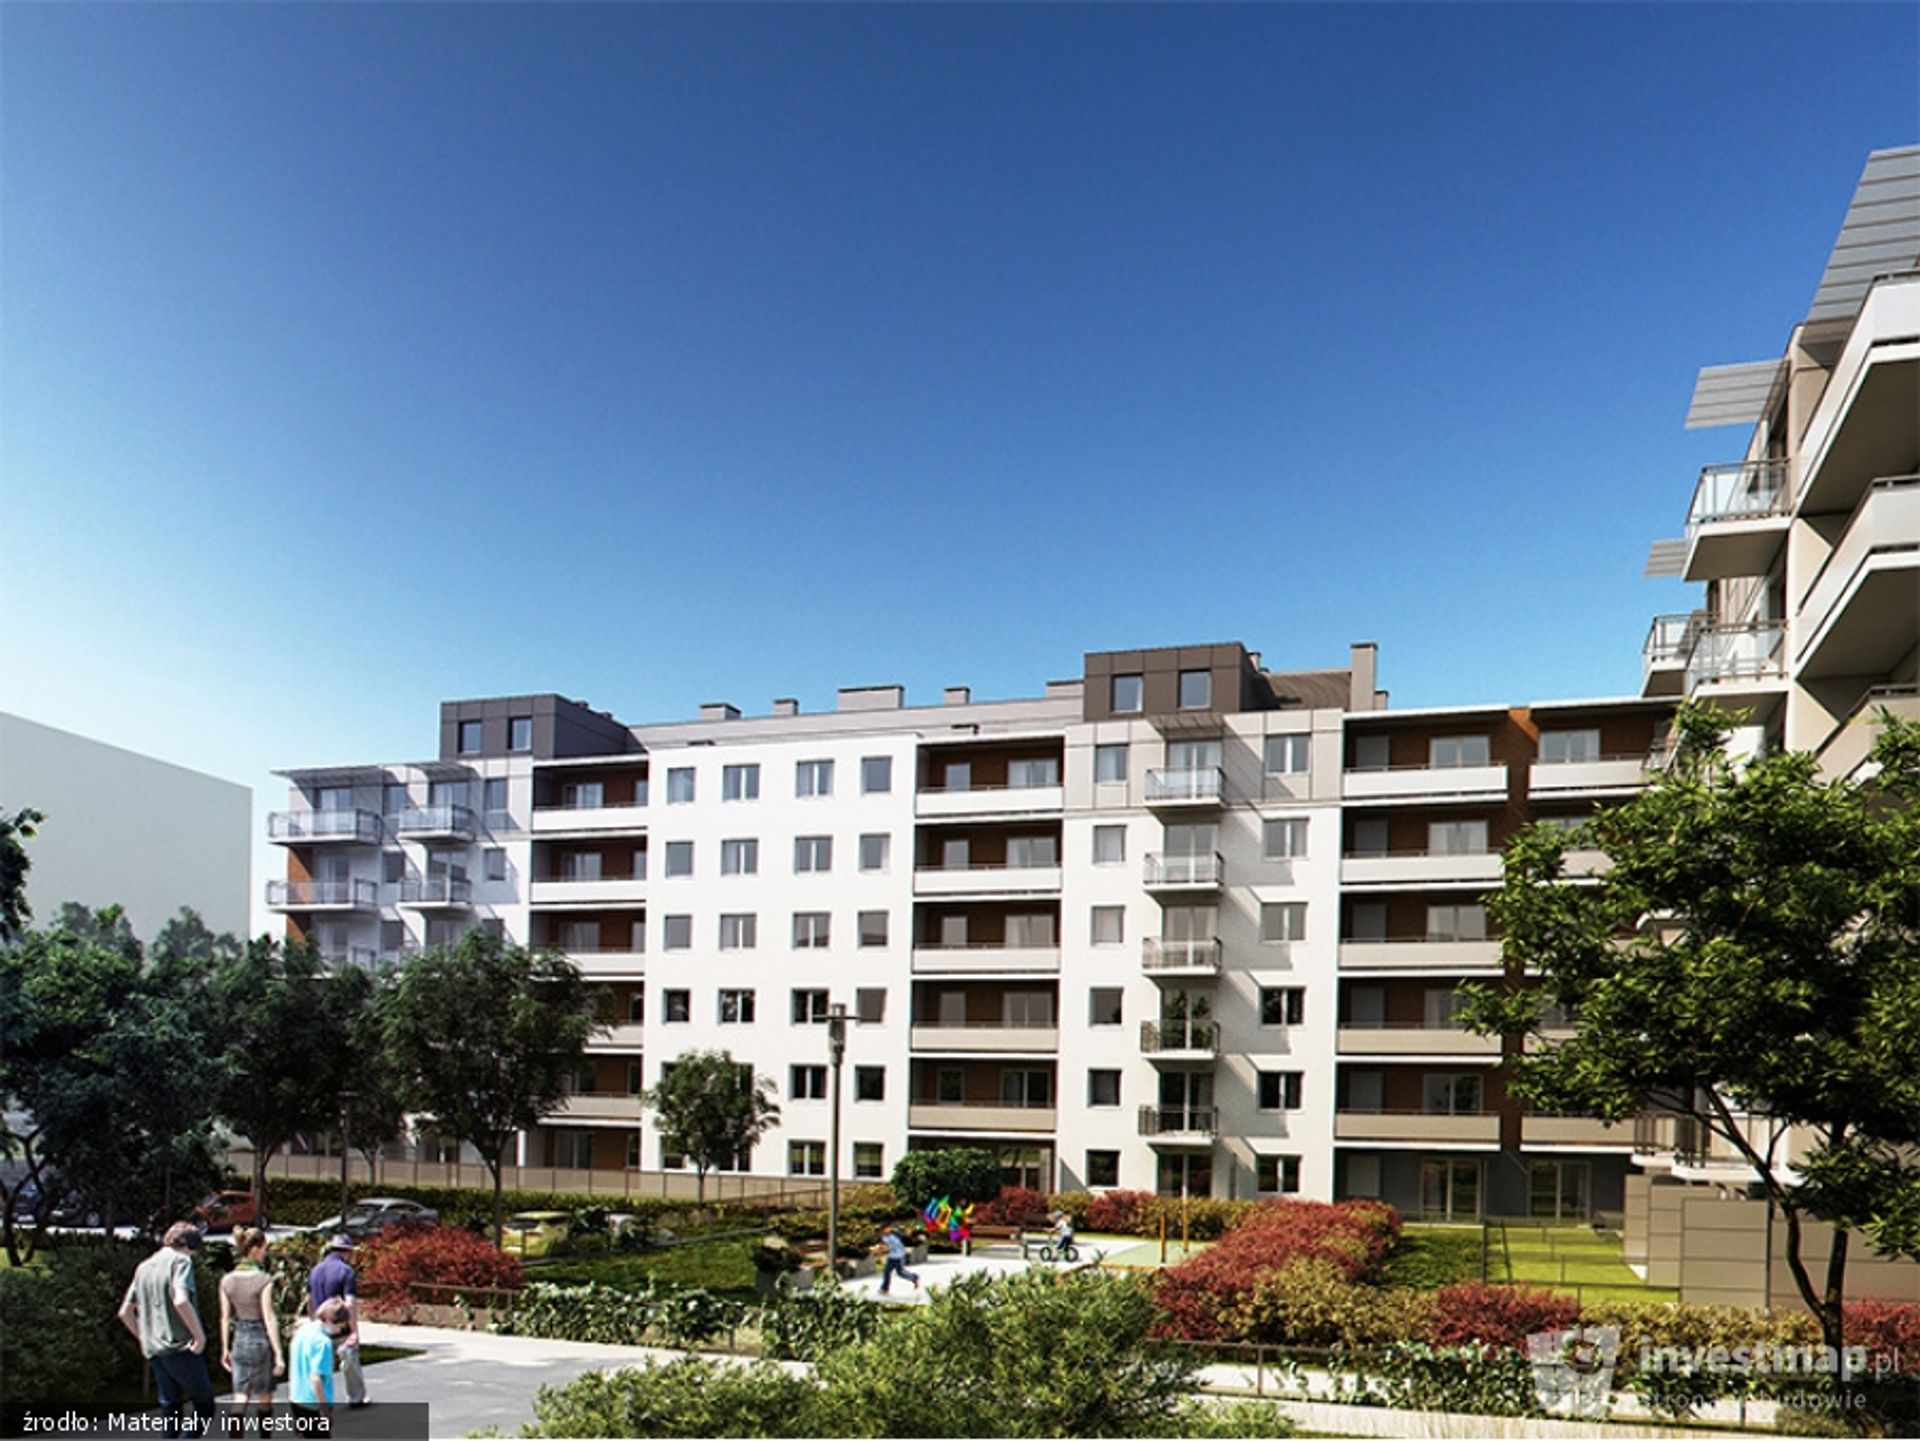  Siena - klimatyczne mieszkania w Śródmieściu i gratka dla inwestorów